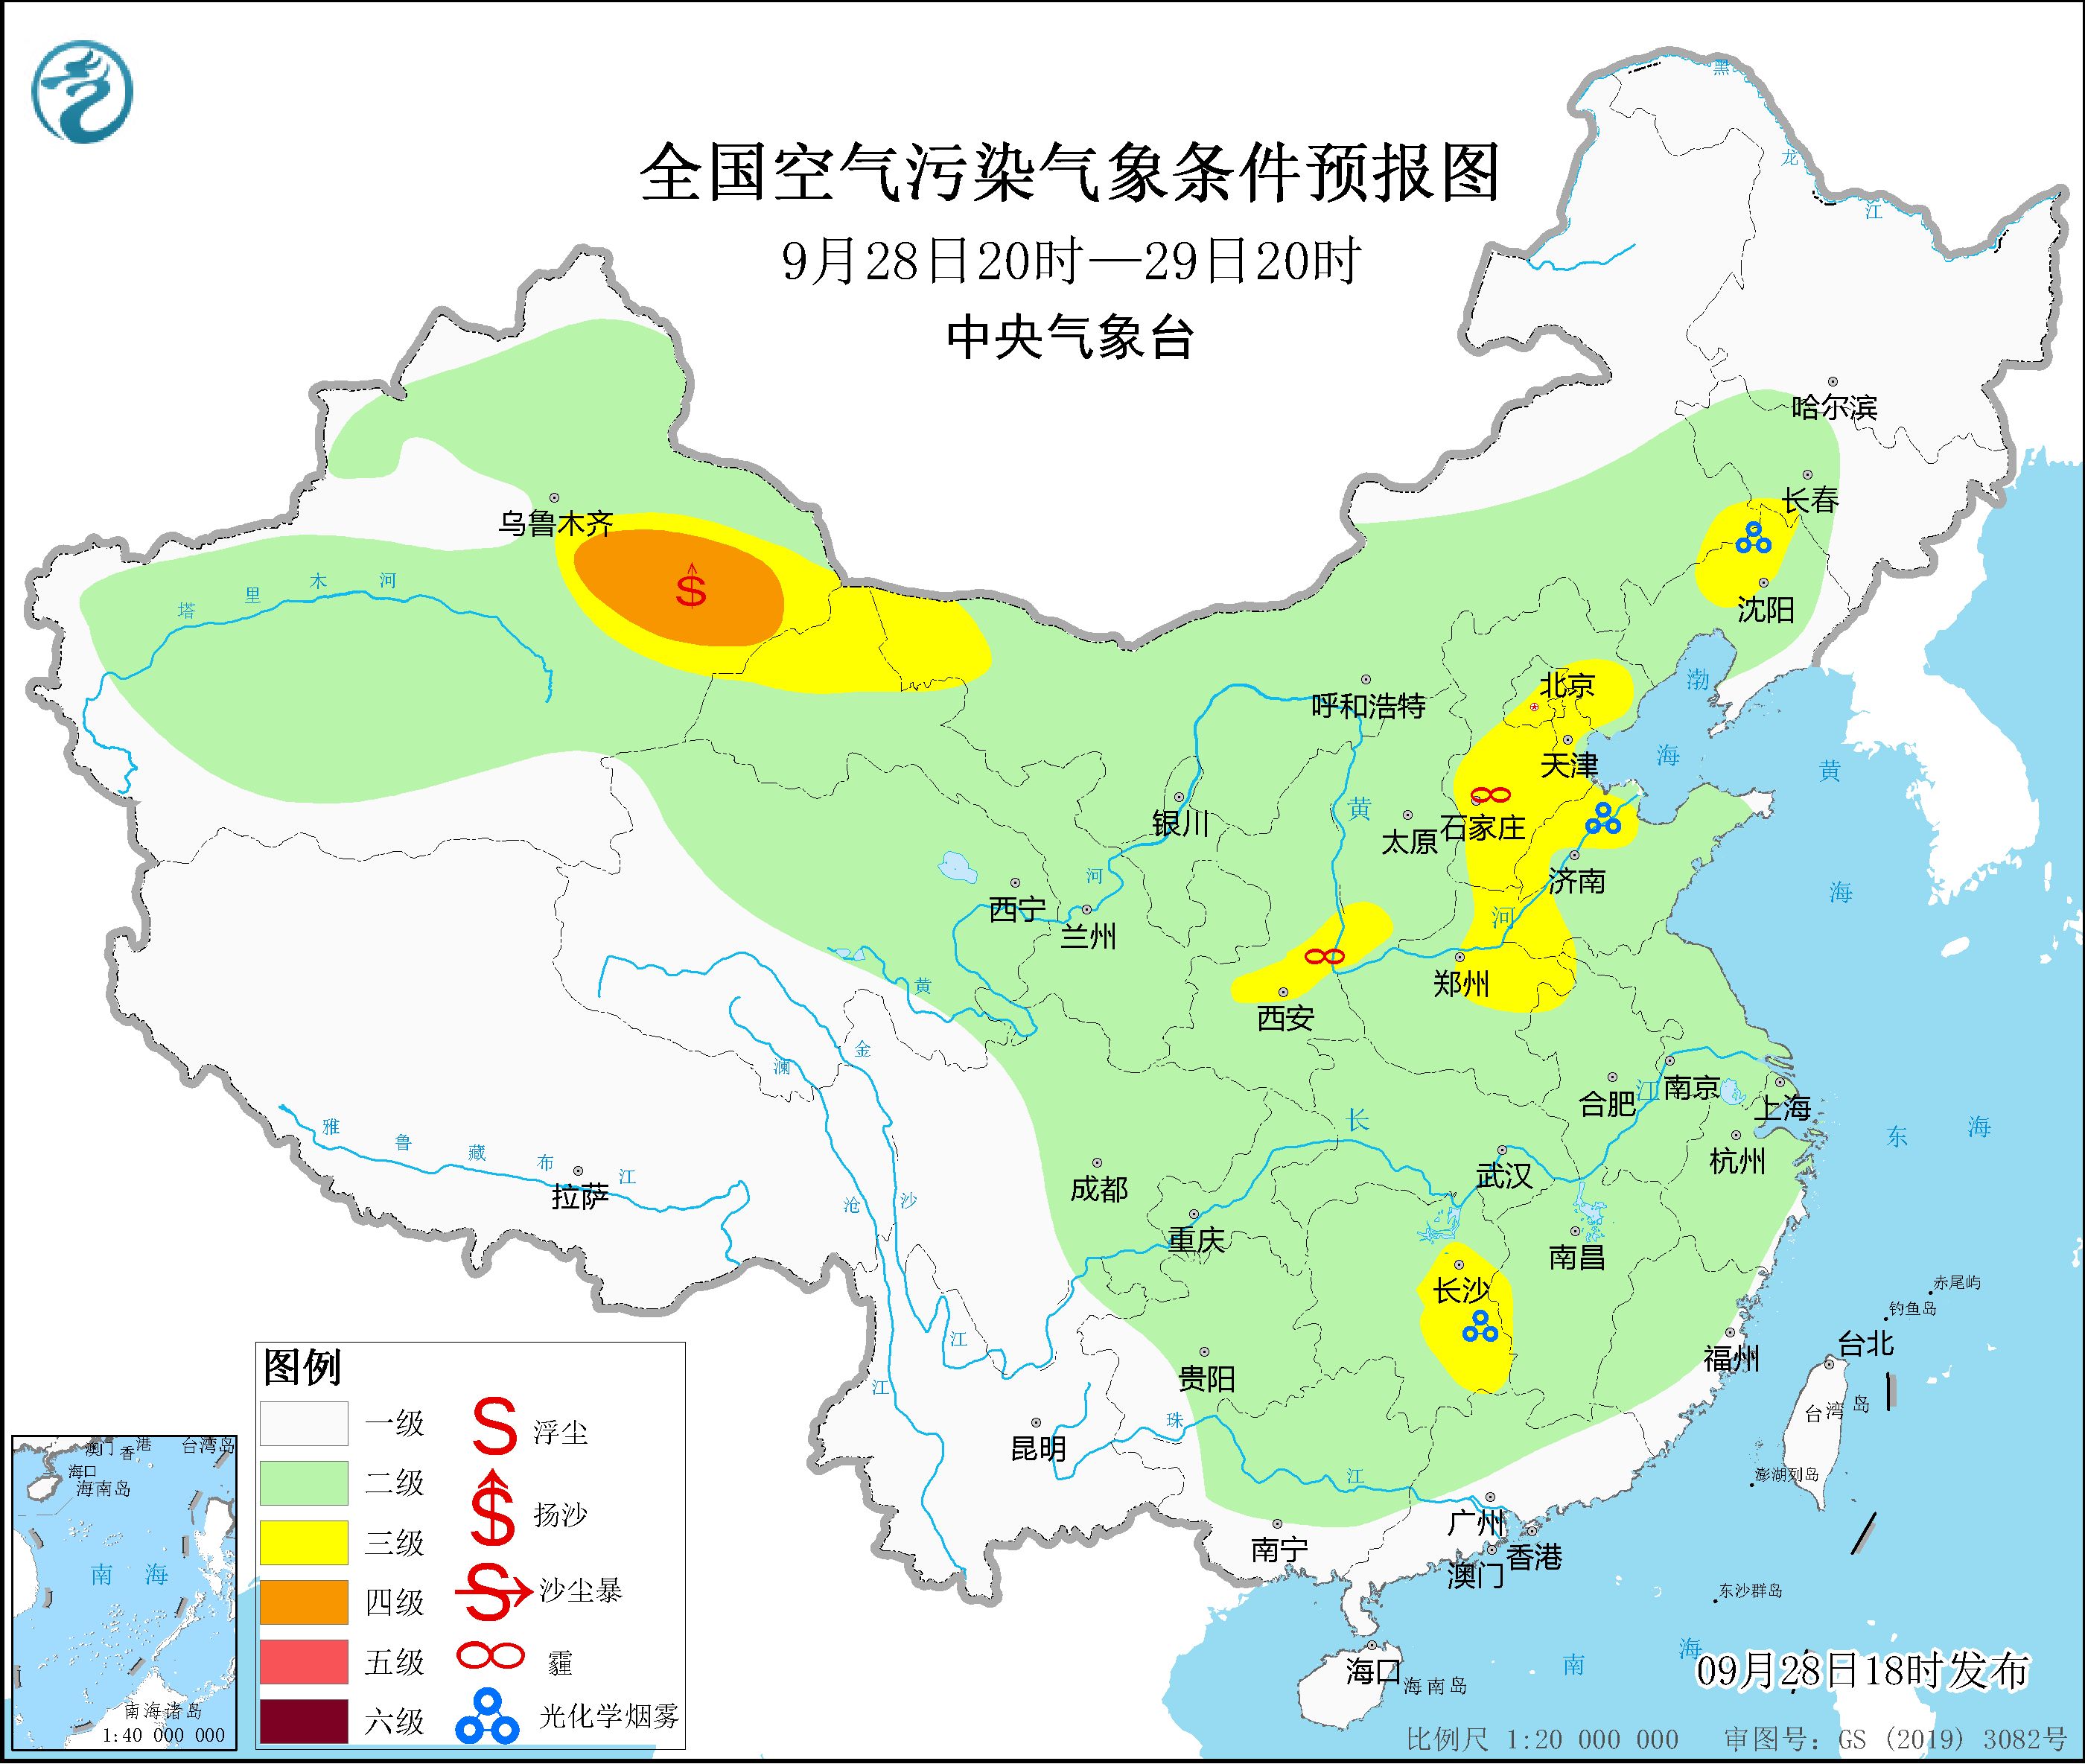 9月29日至10月1日华北中南部等地大气扩散条件较差